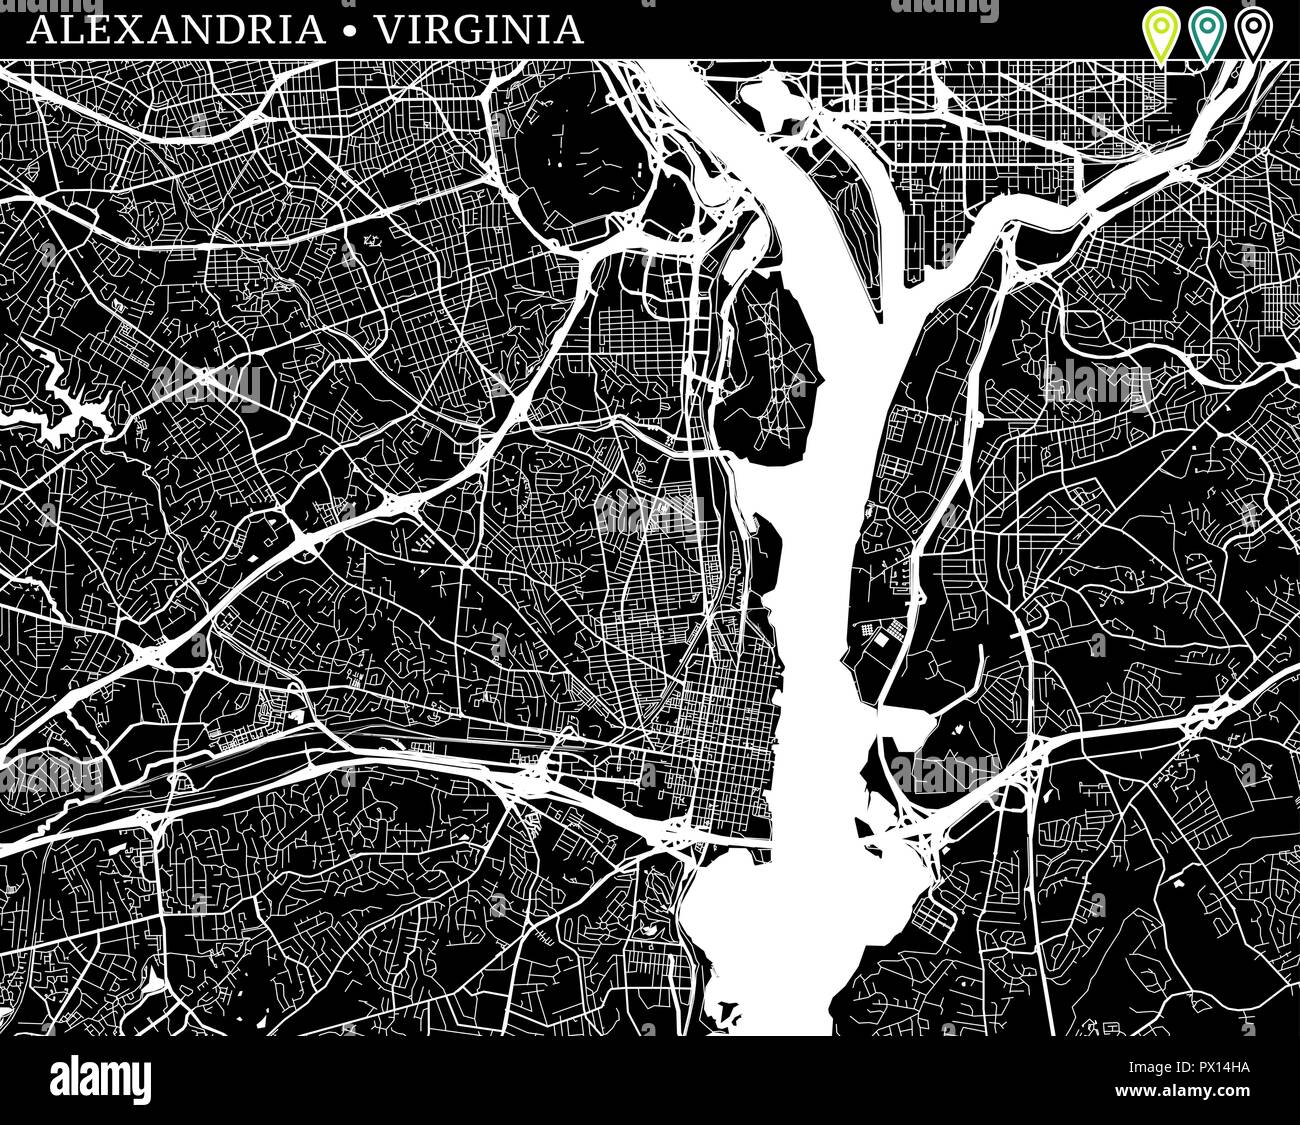 Mappa semplice di Alexandria, Virginia, Stati Uniti d'America. Versione in bianco e nero per gli sfondi. Questa mappa di Alessandria contiene tre marcatori che vengono raggruppati e ca Illustrazione Vettoriale